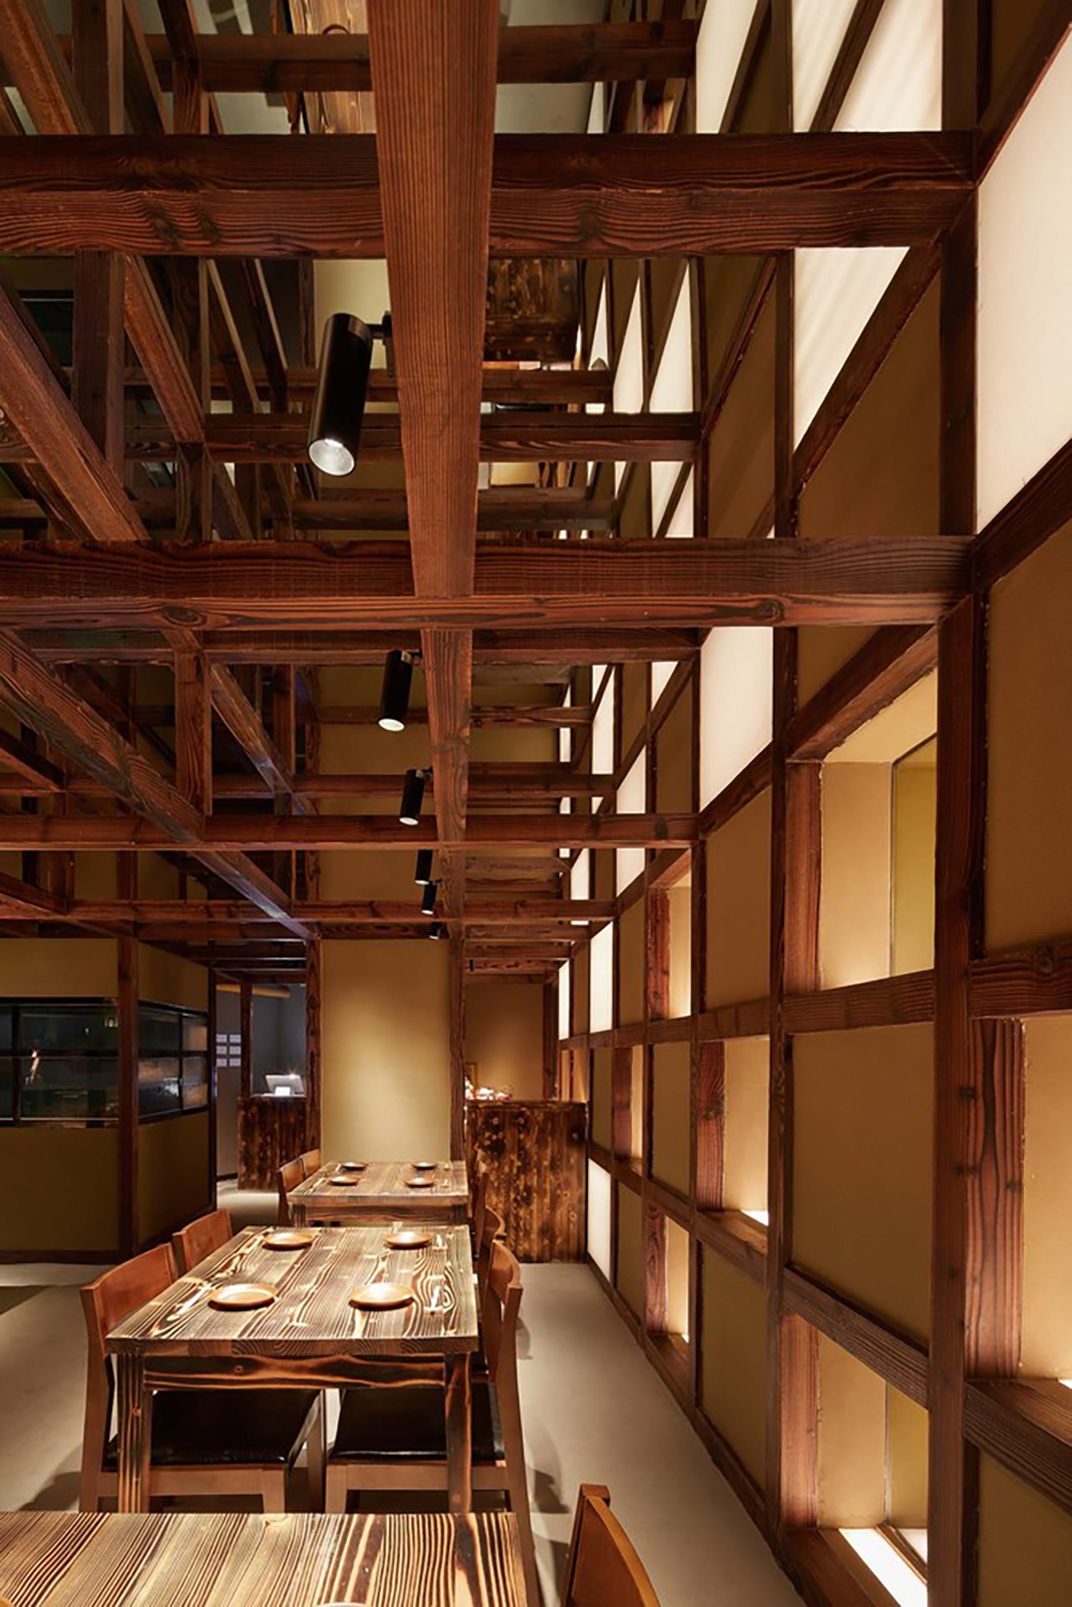 日本传统风格料理餐厅 Tsutsumi＆Associates 餐厅LOGO VI空间设计 全球餐饮研究所 视觉餐饮 深圳武汉杭州上海广州北京